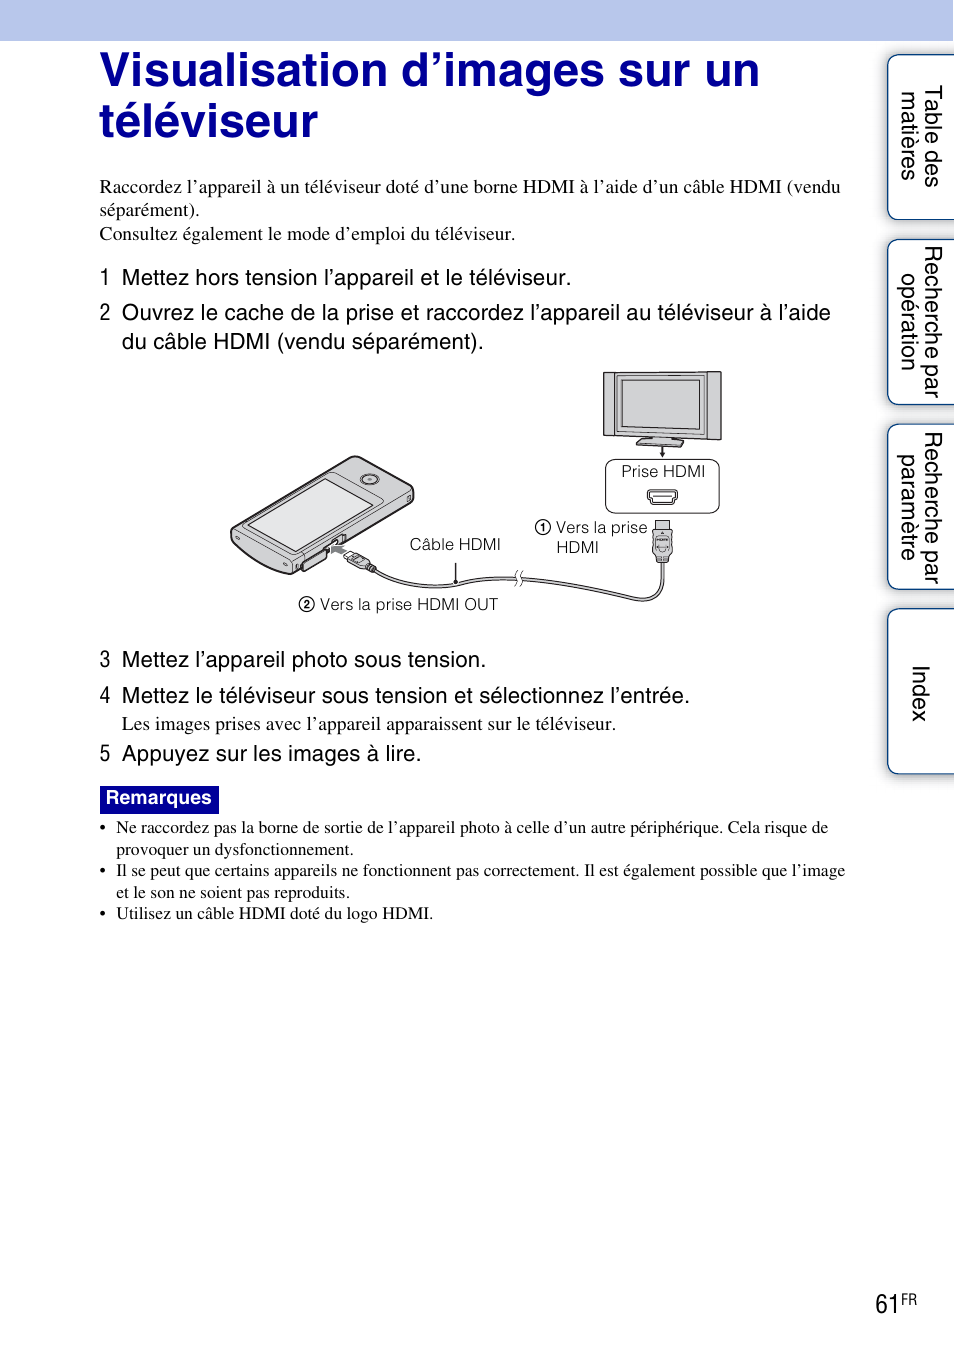 Visualisation d’images sur un téléviseur, T (61) | Sony bloggie MHS-TS20 Manuel d'utilisation | Page 61 / 75